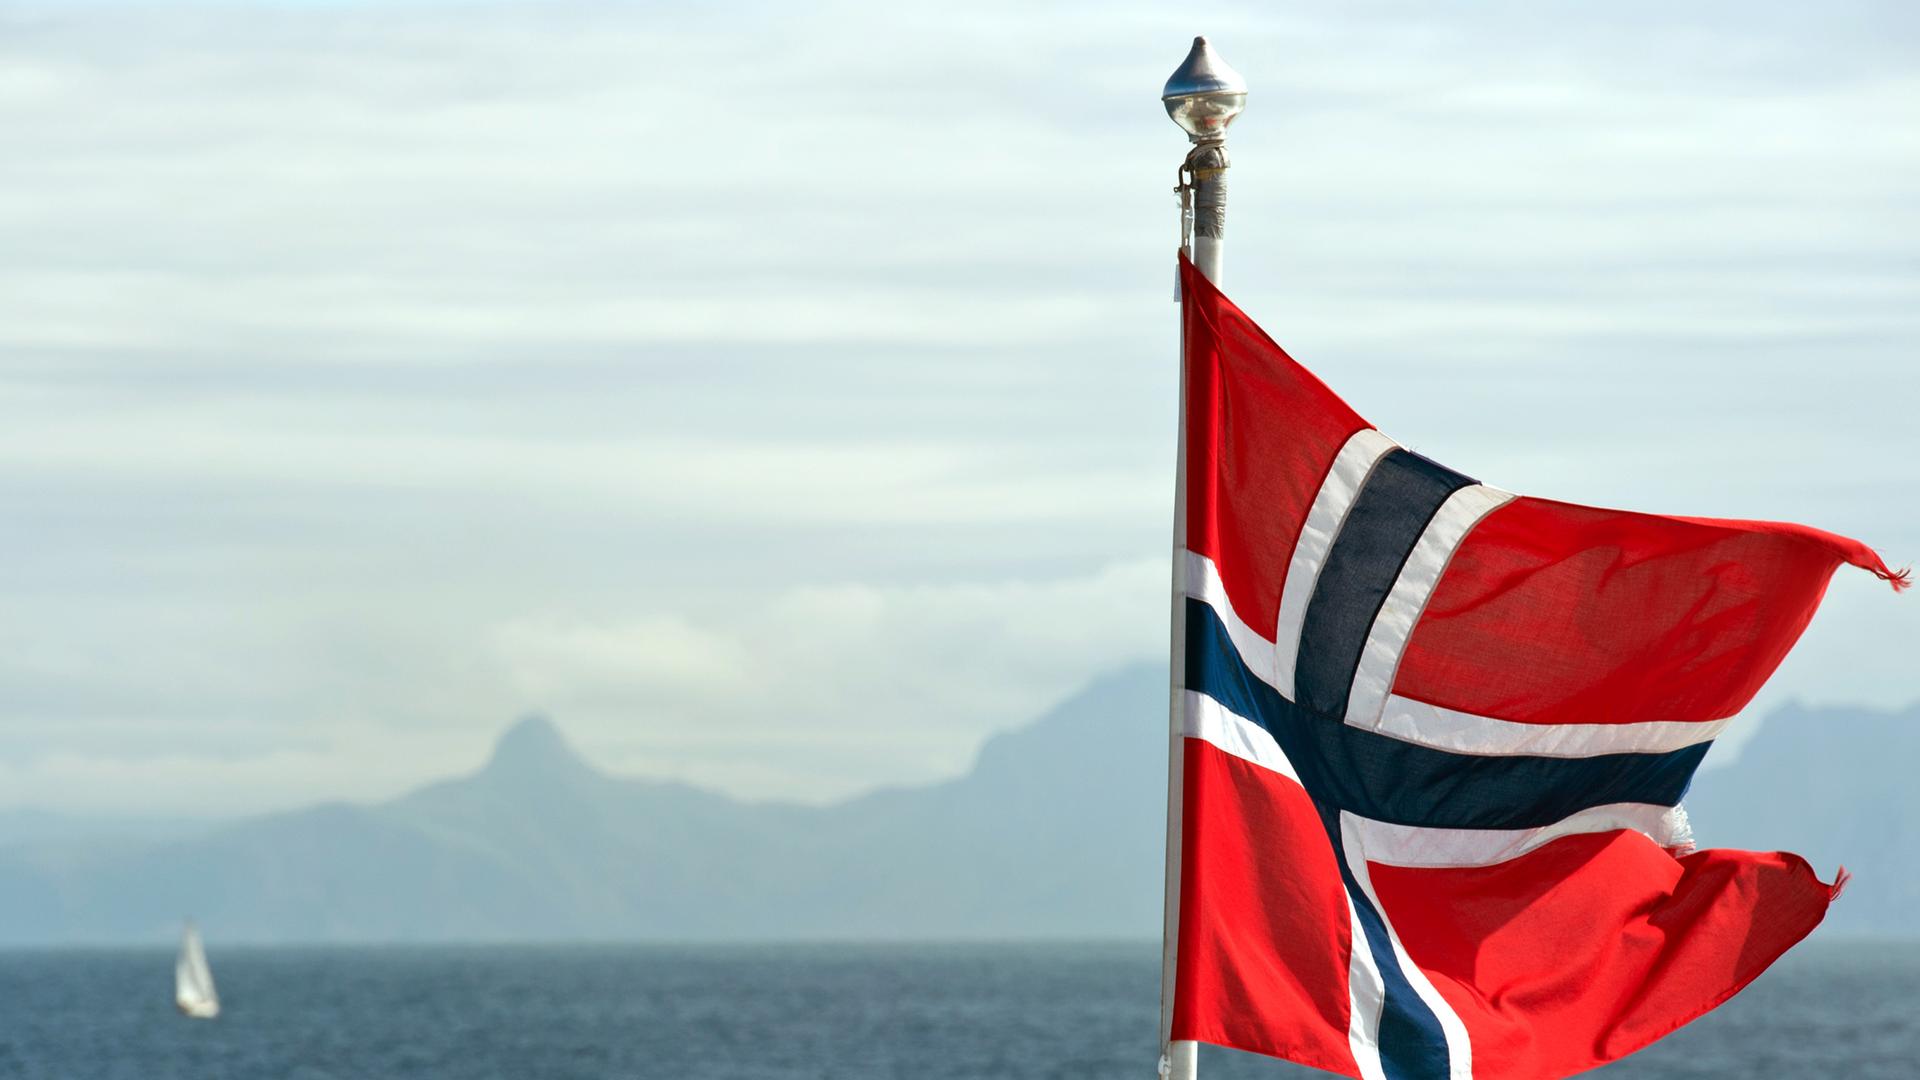 Die Fahne von Norwegen weht im Wind auf einer Fähre unweit der nordnorwegischen Stadt Bodø am Europäischen Nordmeer, aufgenommen am 21.07.2011.